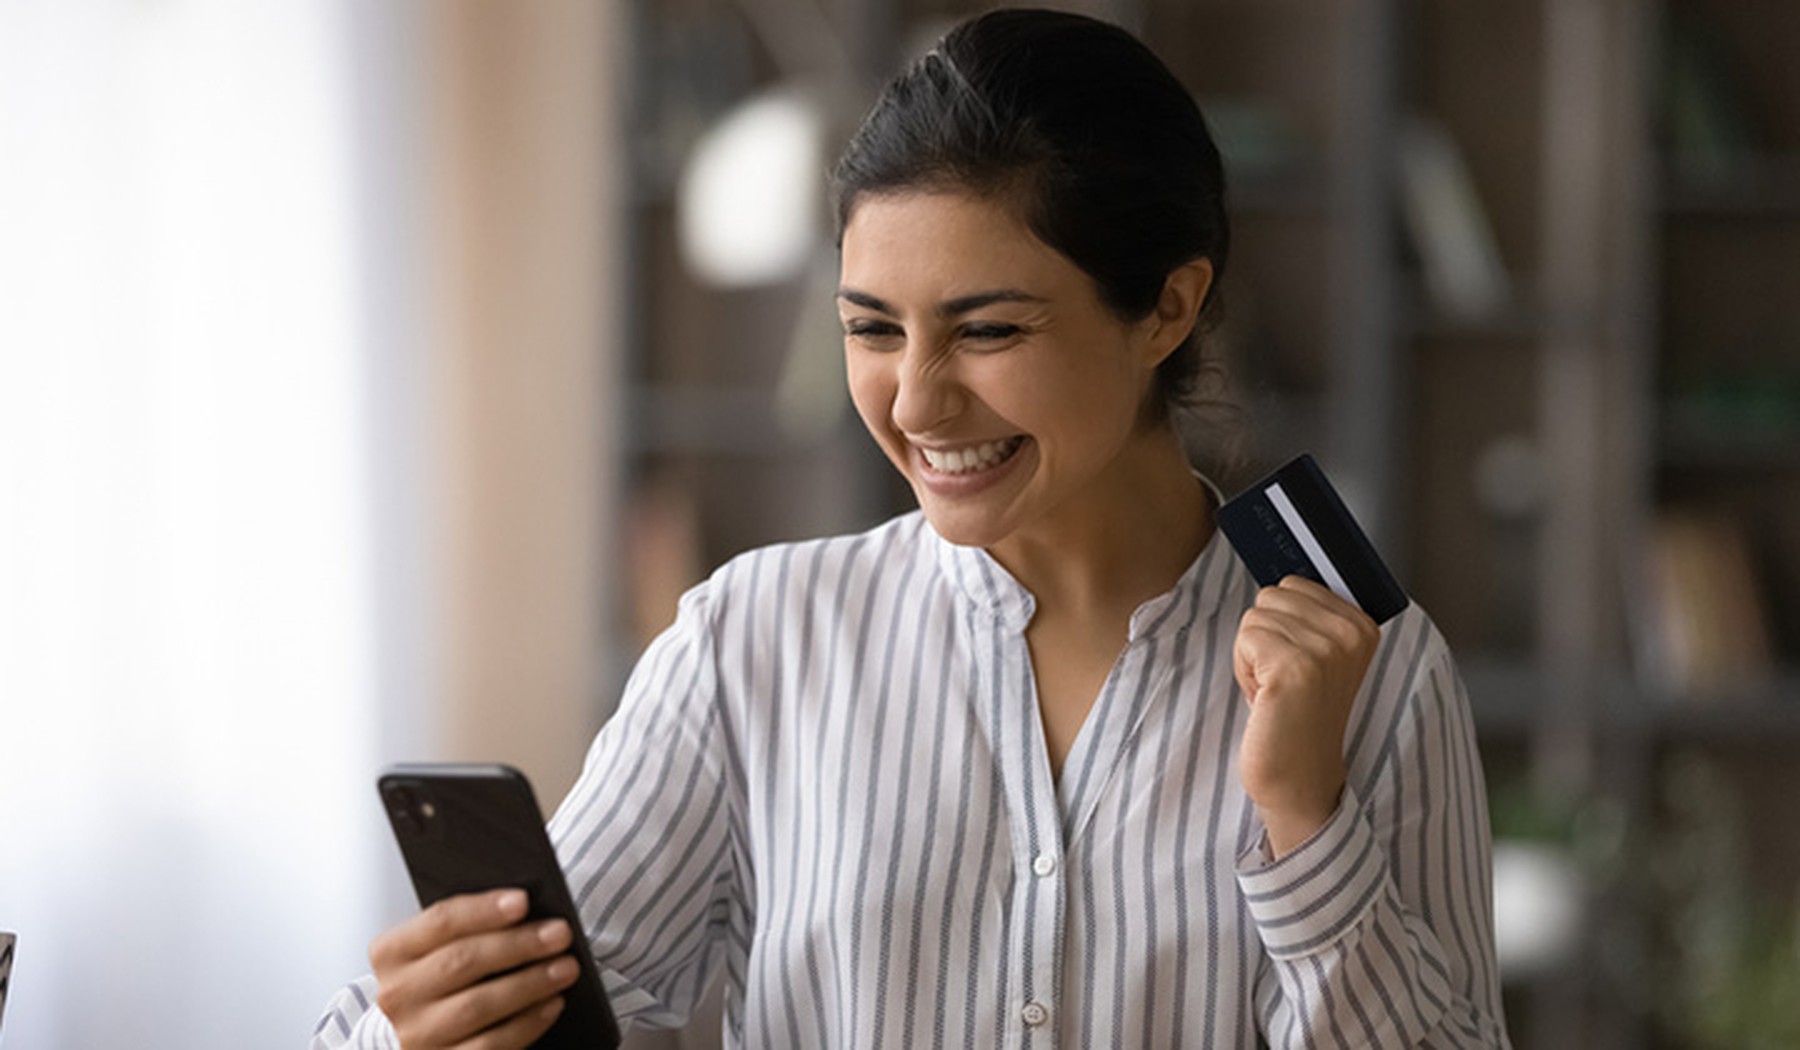 Mujer joven muy sonriente mirando su smartphone y con una tarjeta de crédito en la otra mano